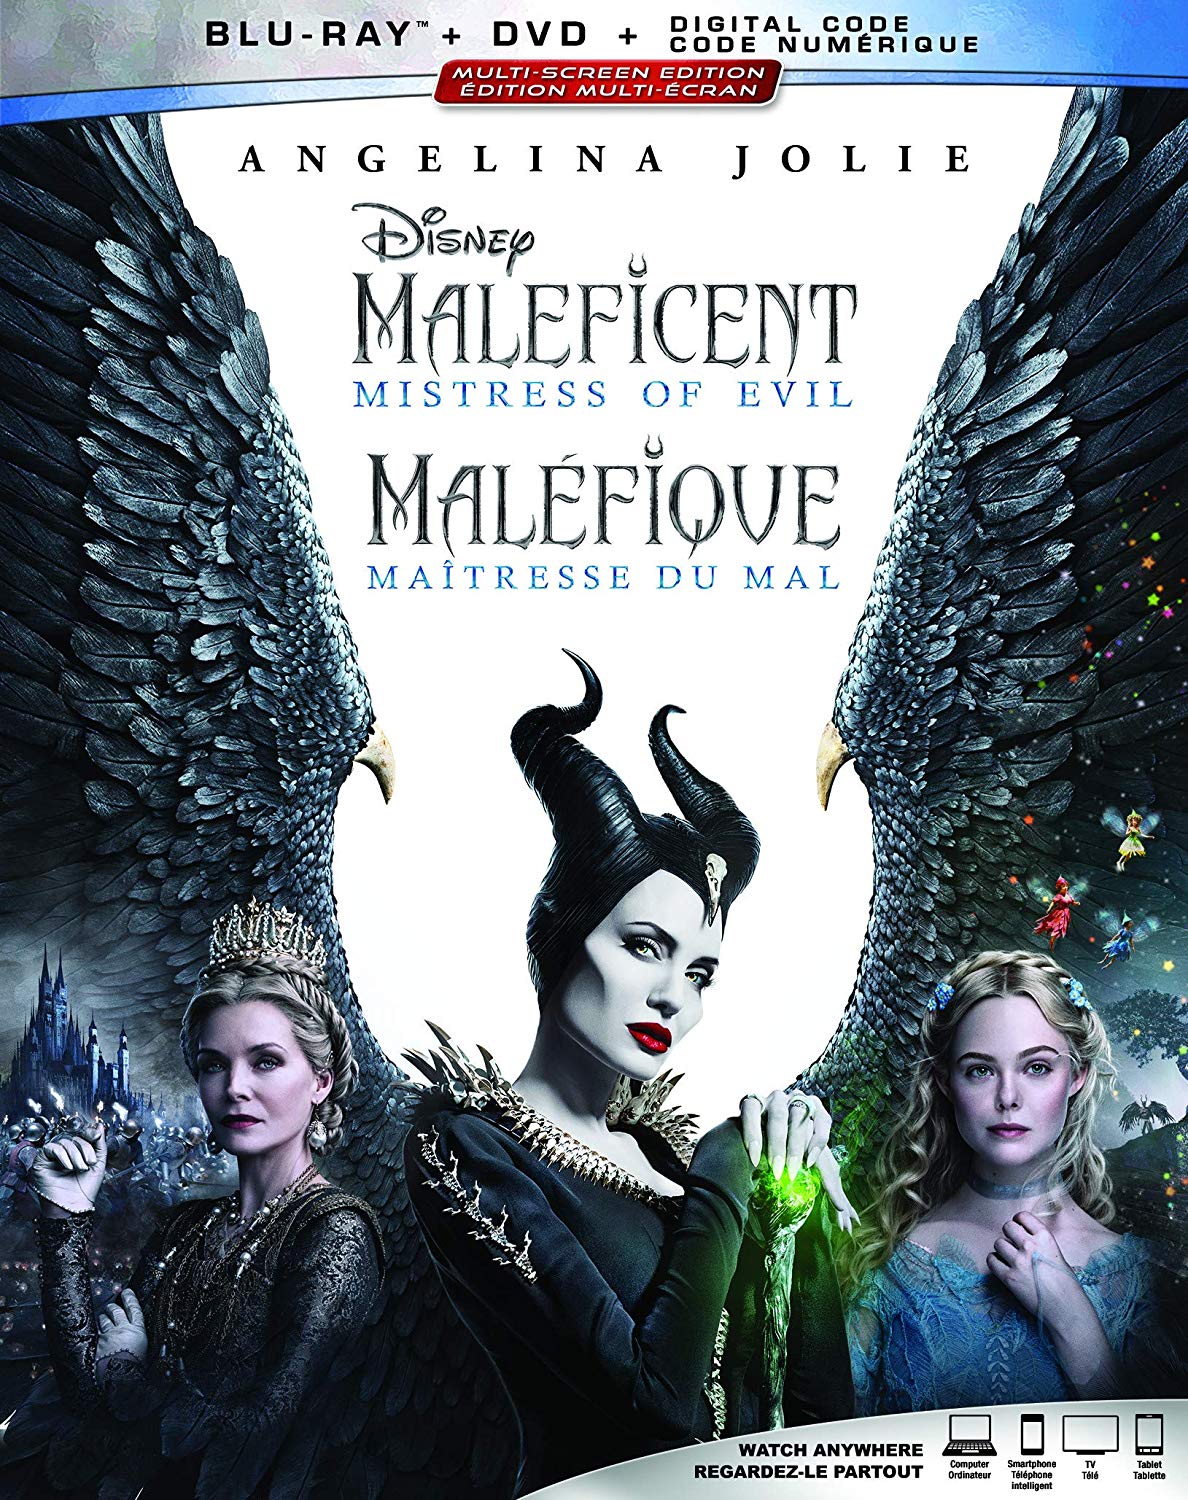 Maleficent: Mistress of Evil Blu-ray